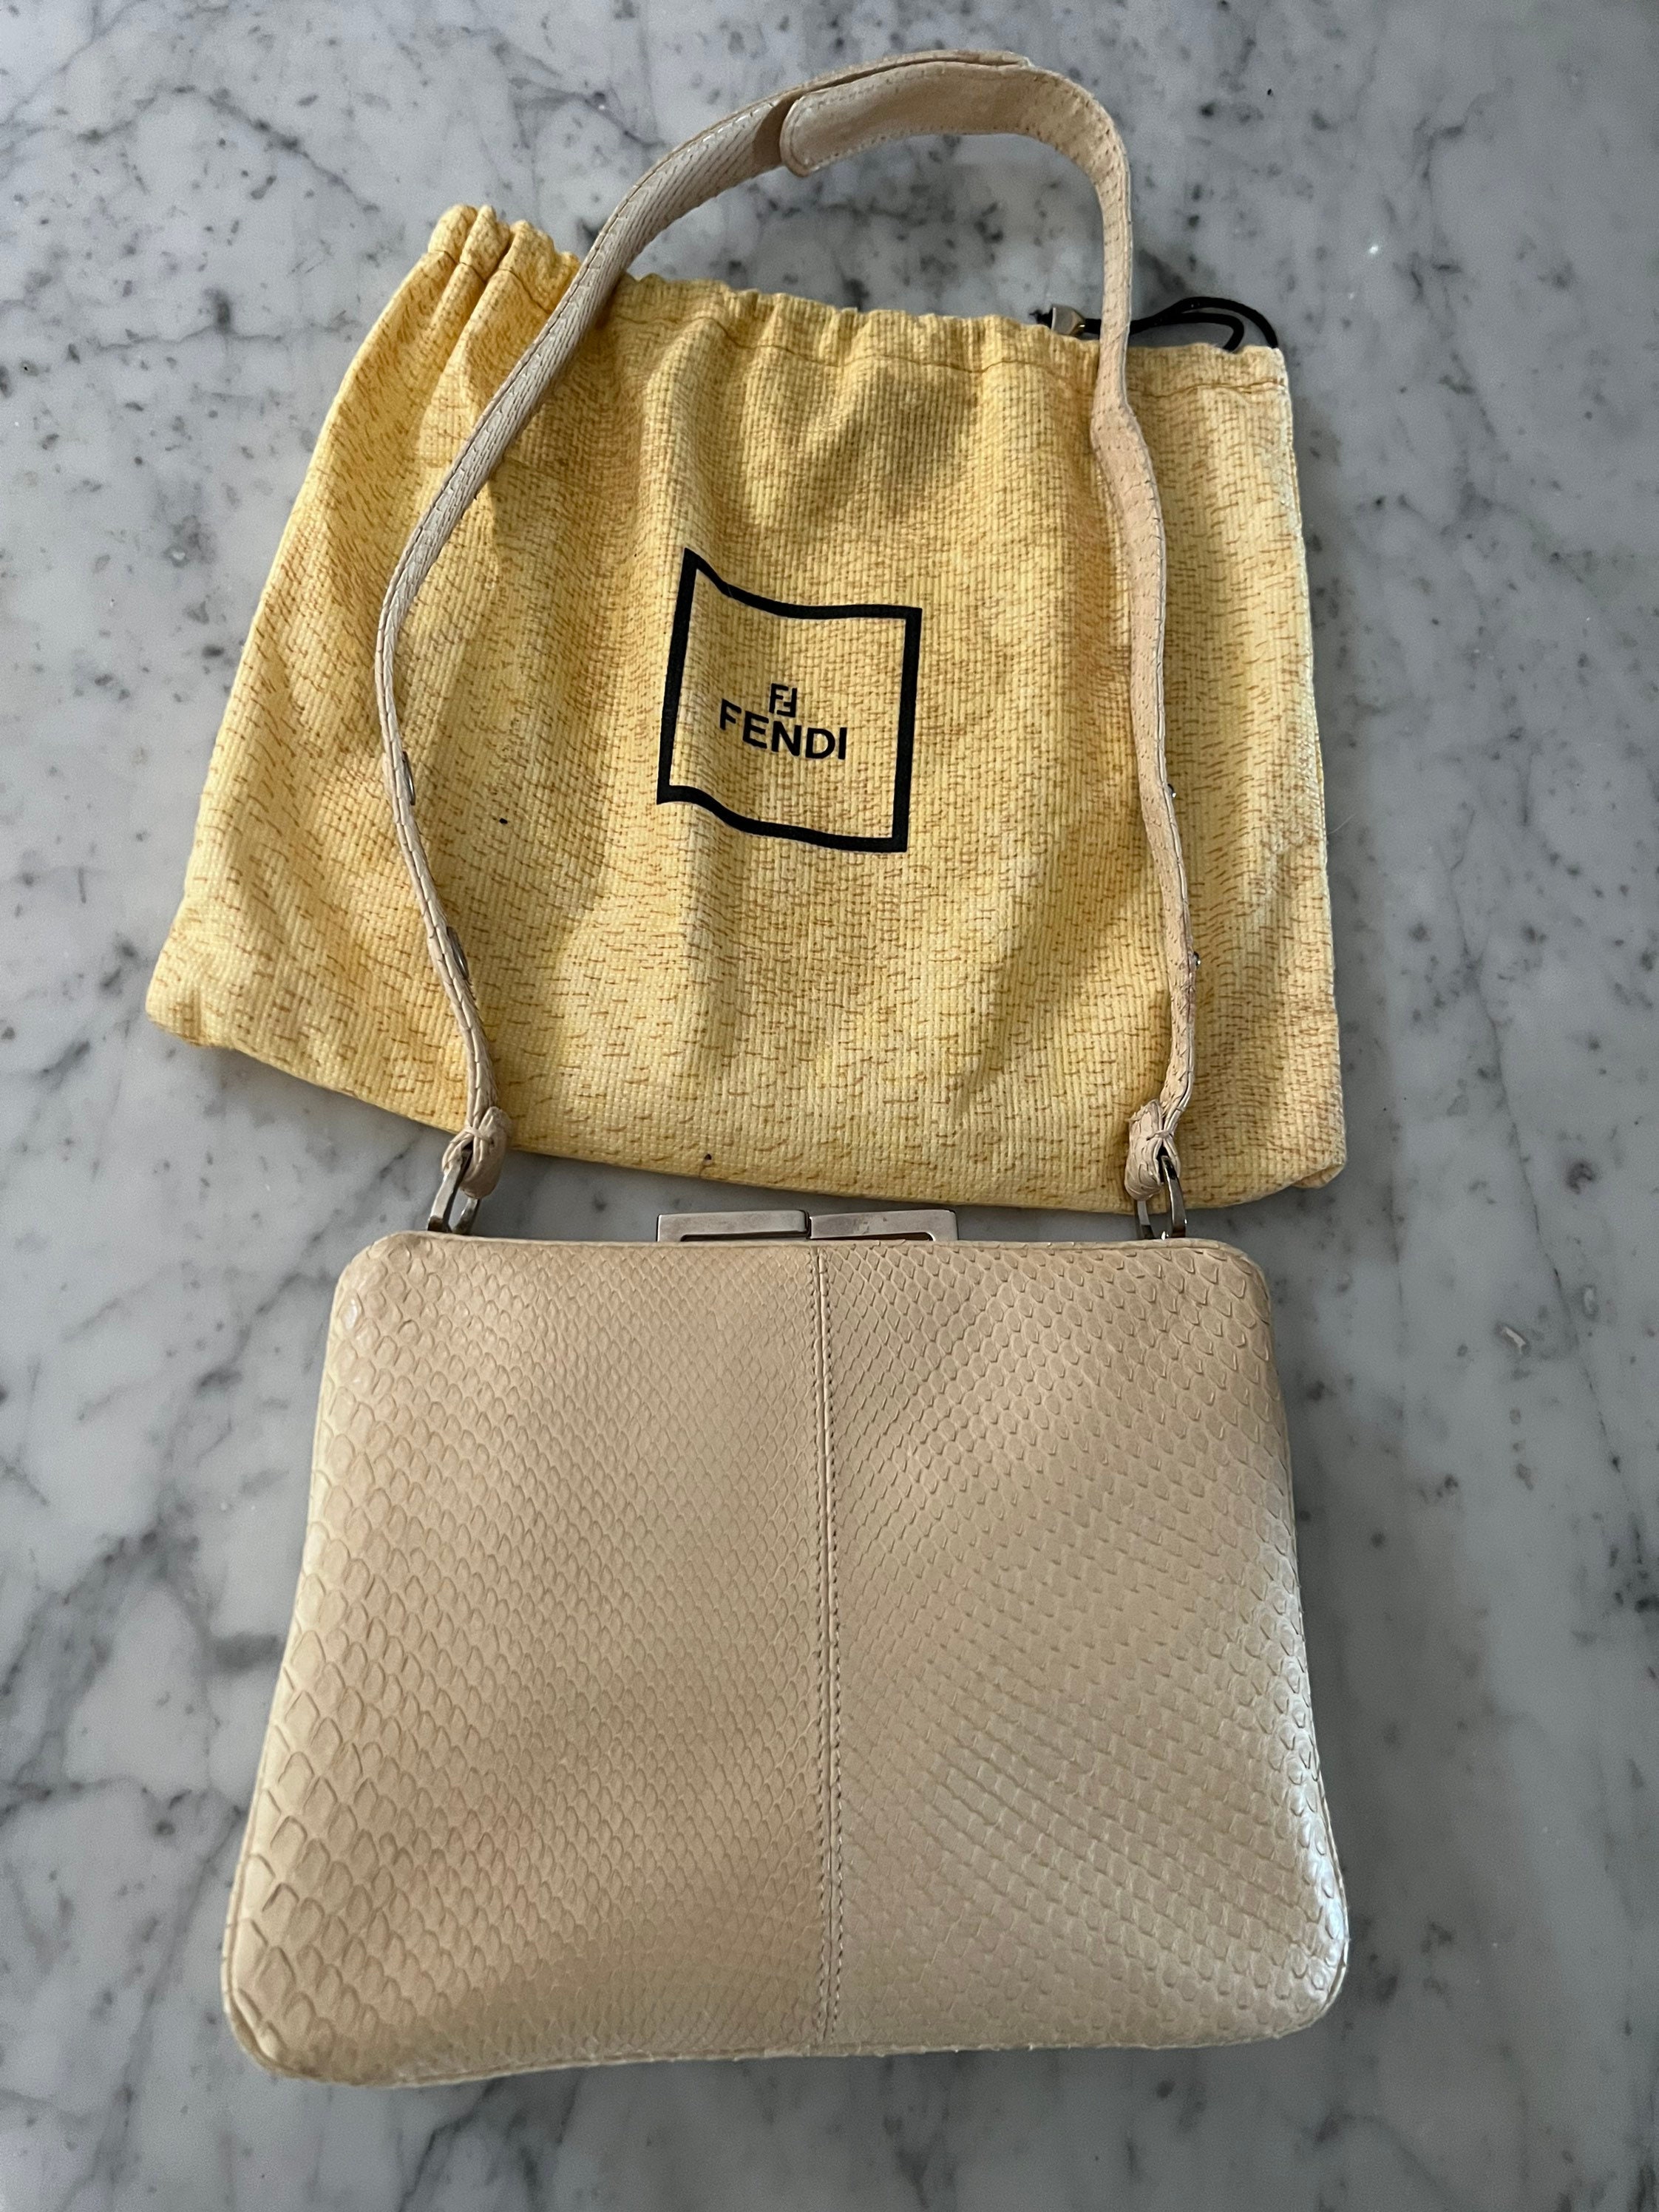 FENDI Fendi Mini Baguette Gold Beaded & Snakeskin Evening Bag